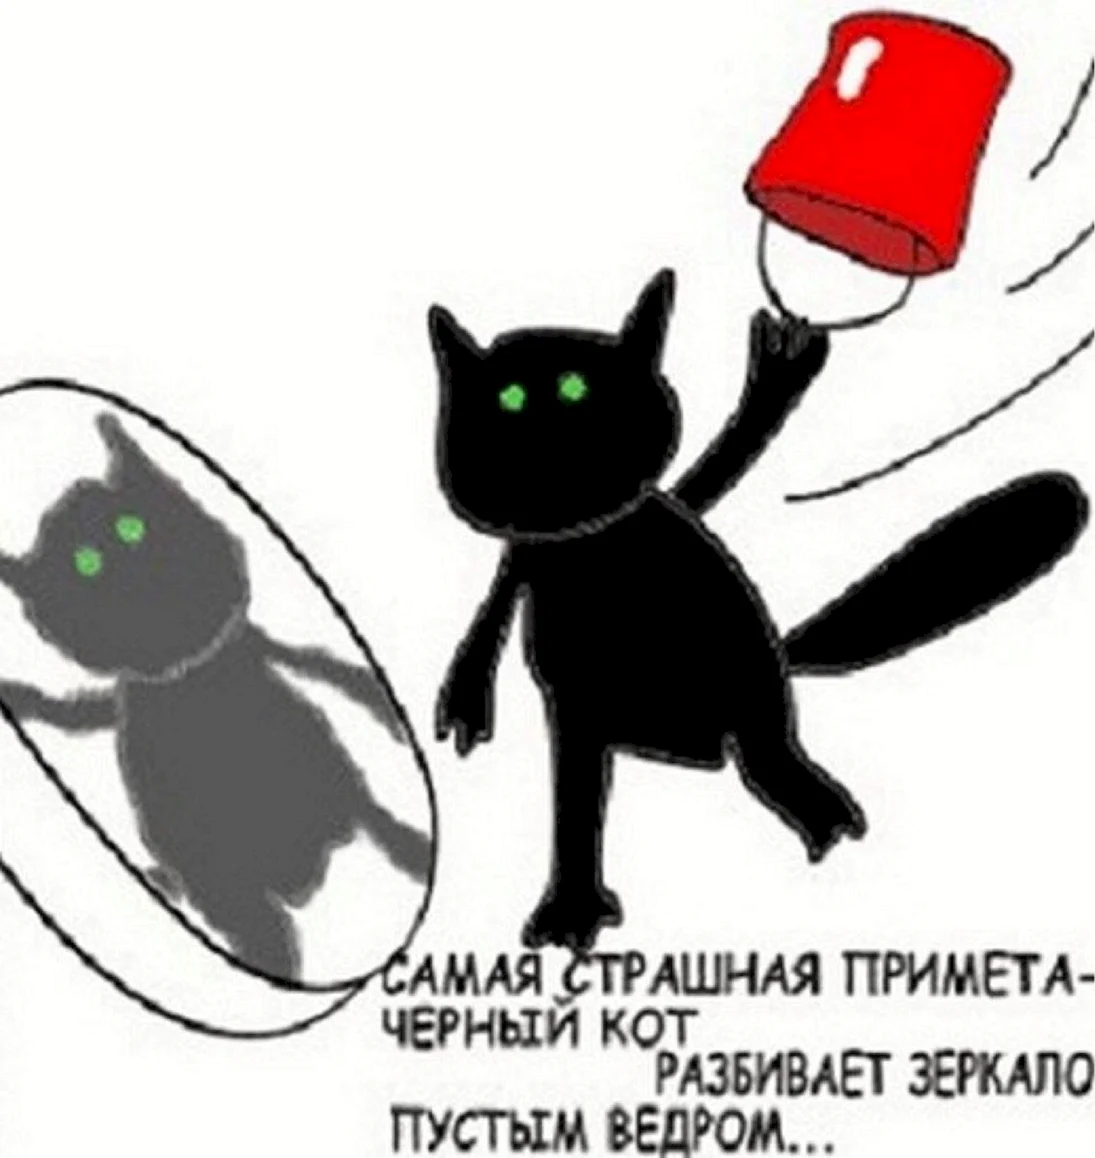 Черный кот с пустым ведром